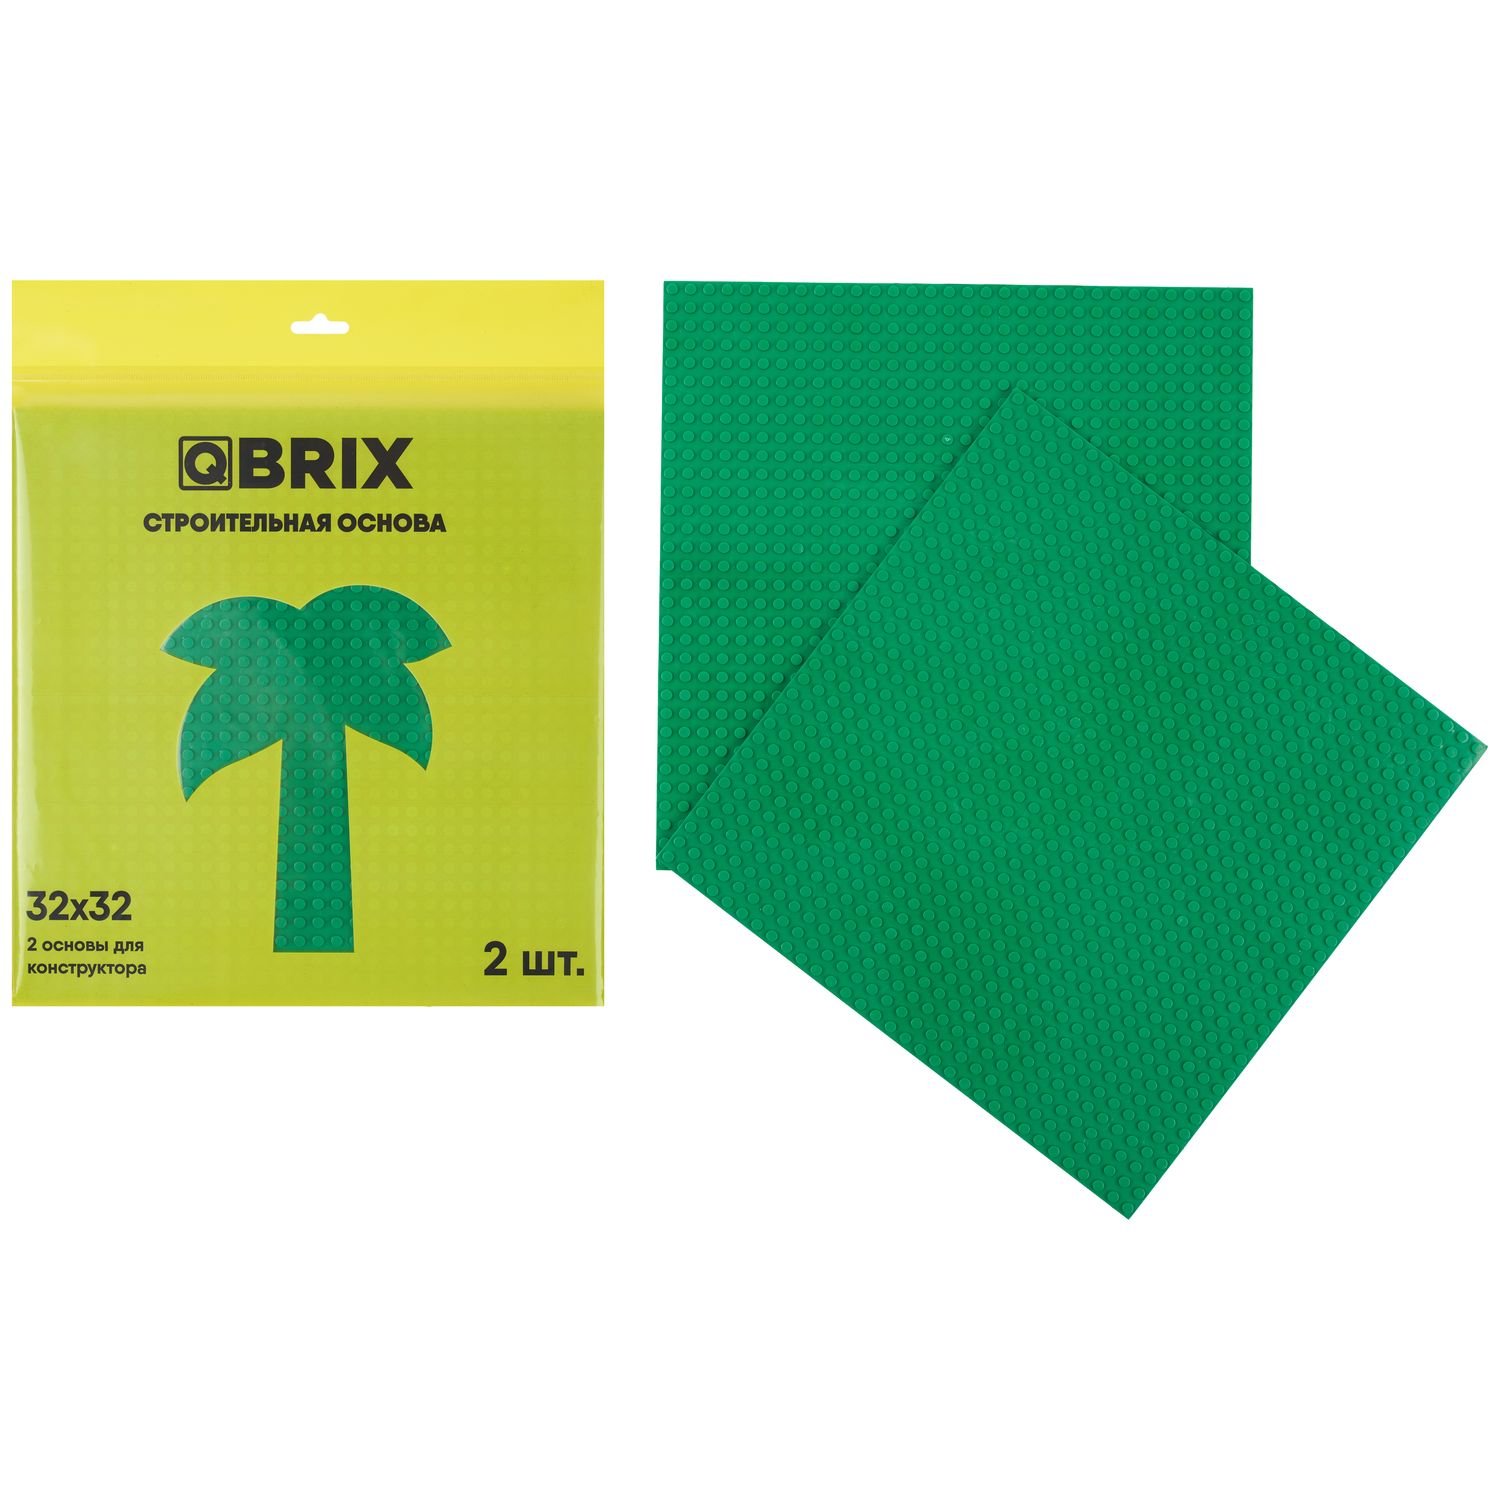 Строительная пластина QBRIX (набор из 2-х штук), цвет: зелёный QBRIX10001